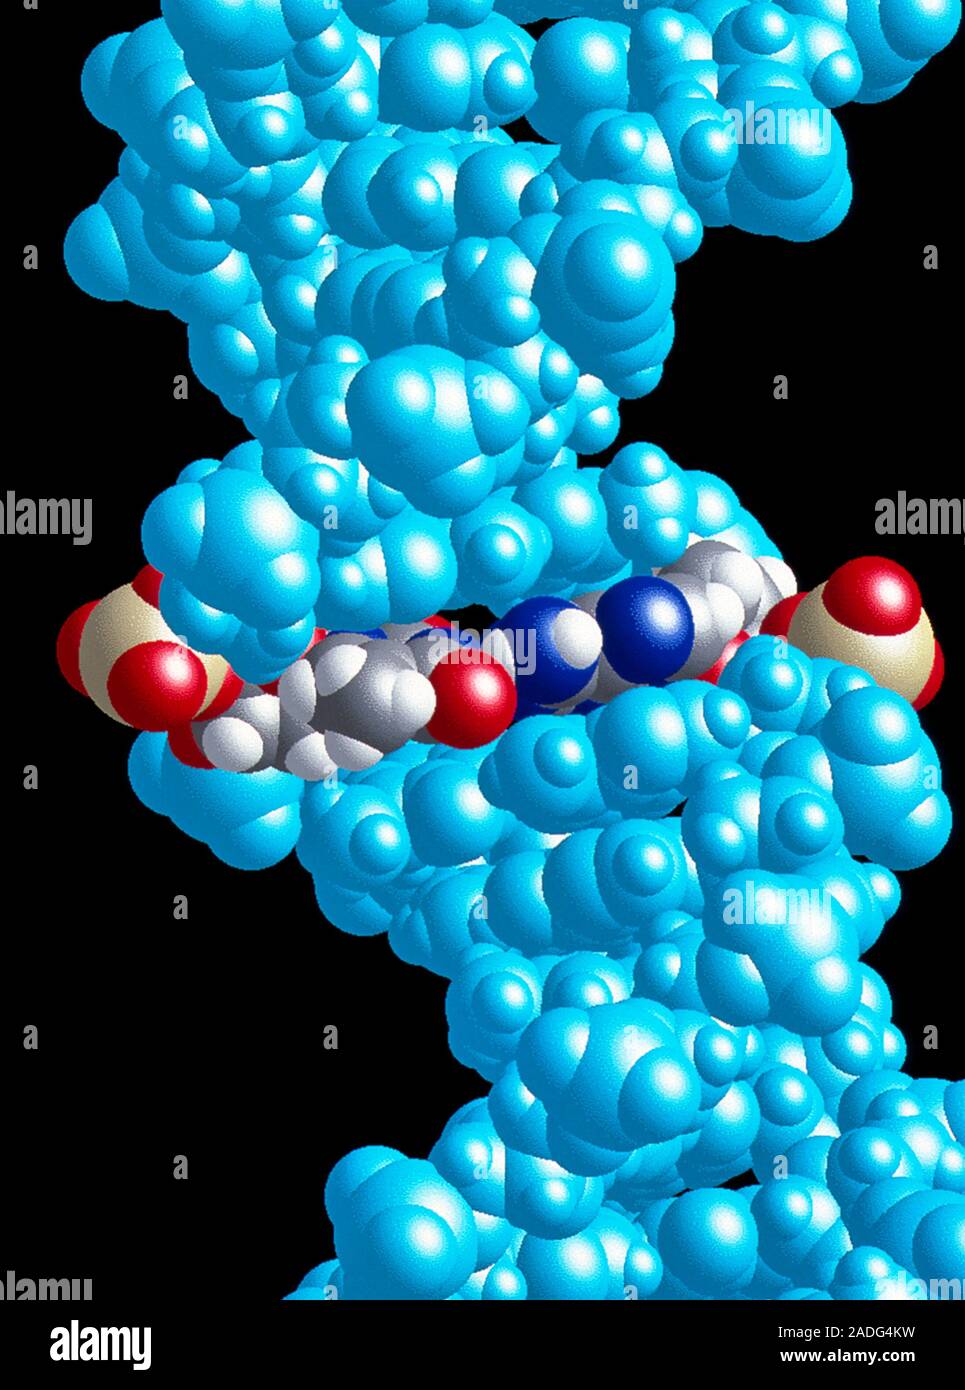 Le collage de l'ADN. Le modèle moléculaire d'une molécule d'ADN avec une  paire de base A-T mis en surbrillance. A-T désigne les bases adénine et  thymine. Les atomes sont en couleur Photo